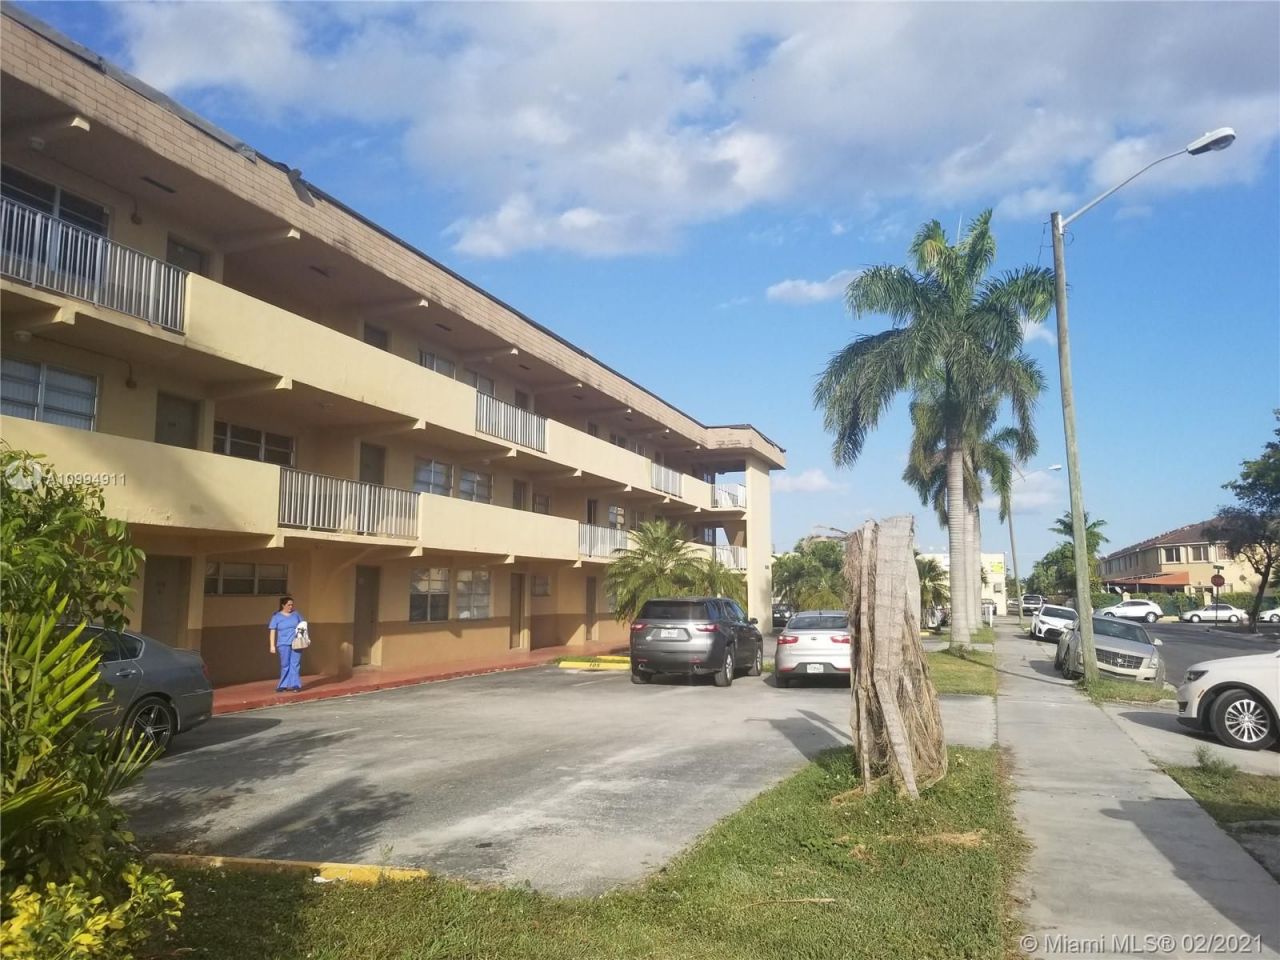 Апартаменты в Майами, США, 73 м2 - фото 1